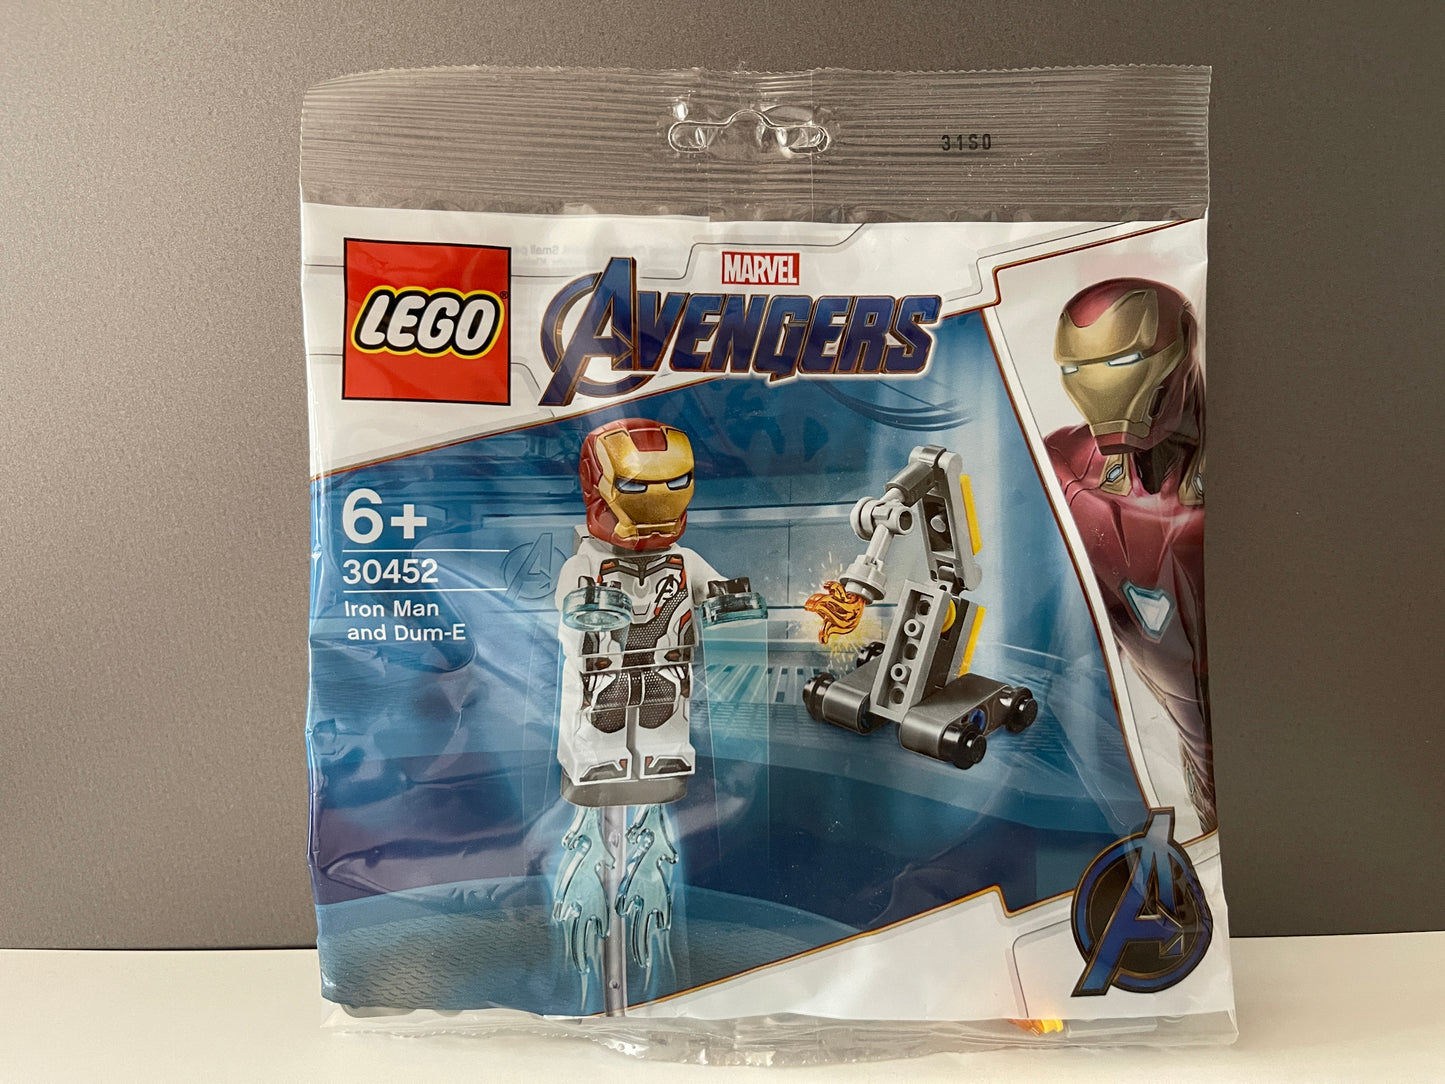 LEGO Marvel Avengers "Iron Man und Dum-E" Polybag (30452)